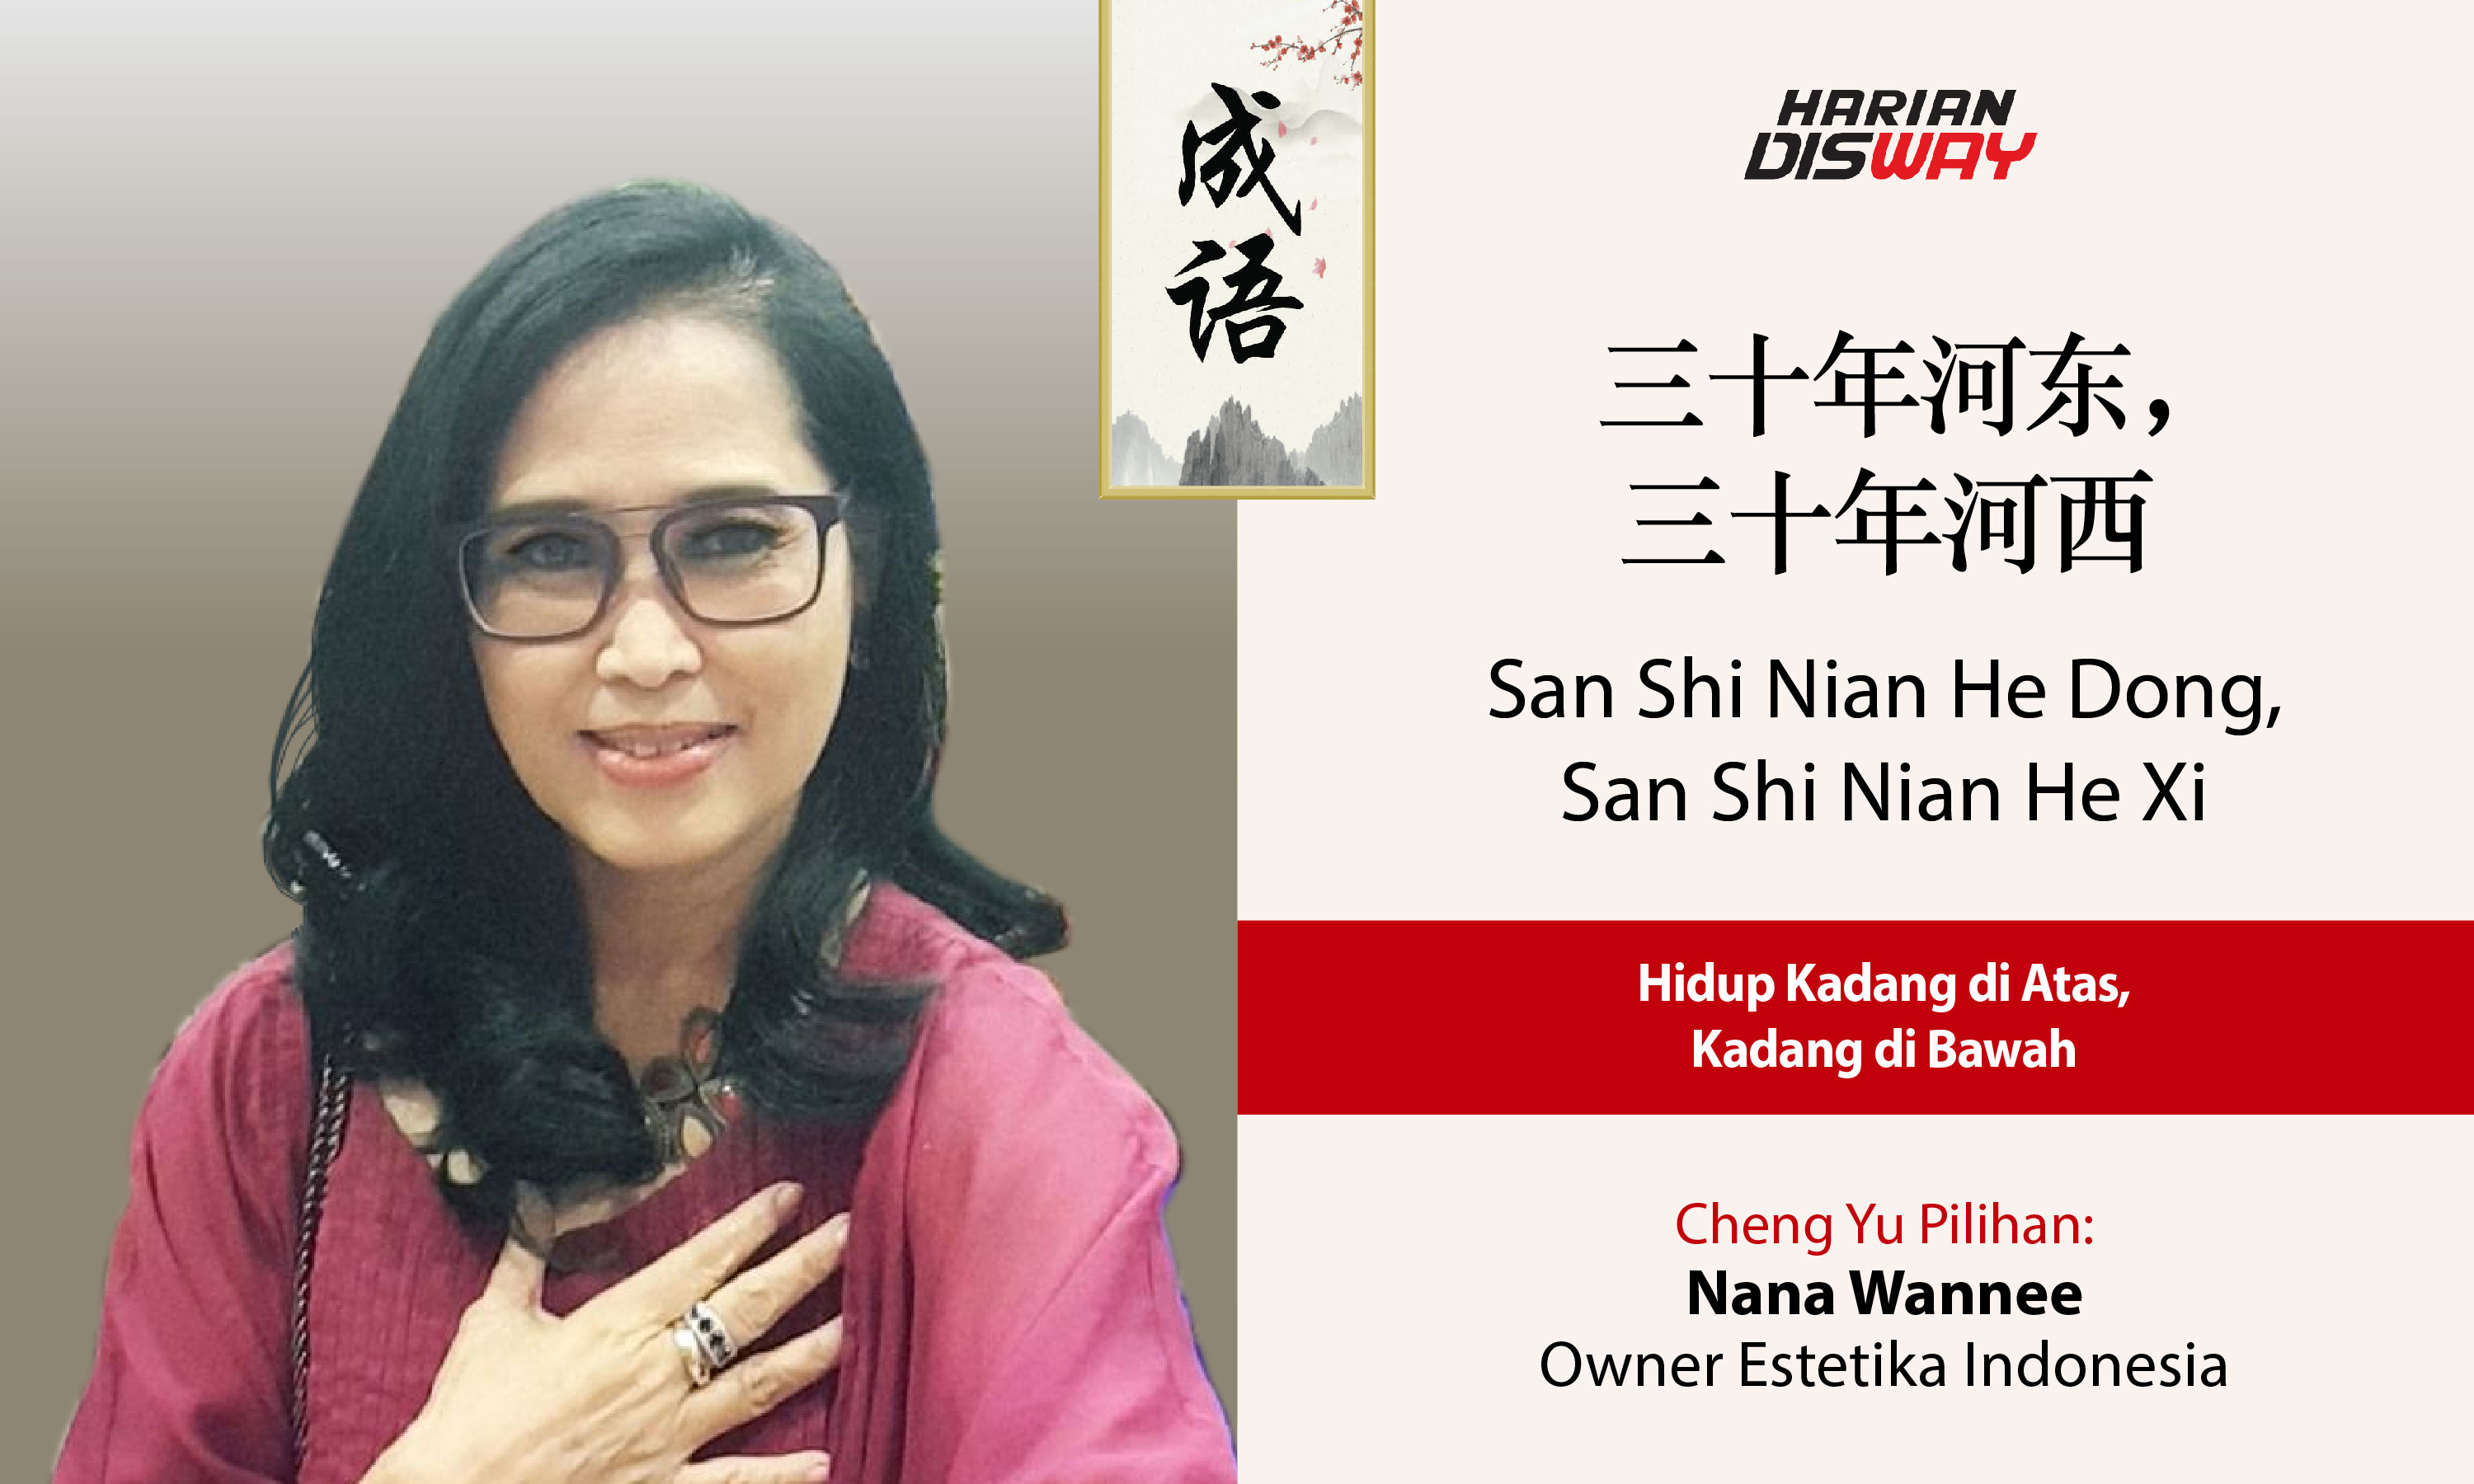 Cheng Yu Pilihan Owner Estetika Indonesia Nana Wannee: San Shi Nian He Dong, San Shi Nian He Xi